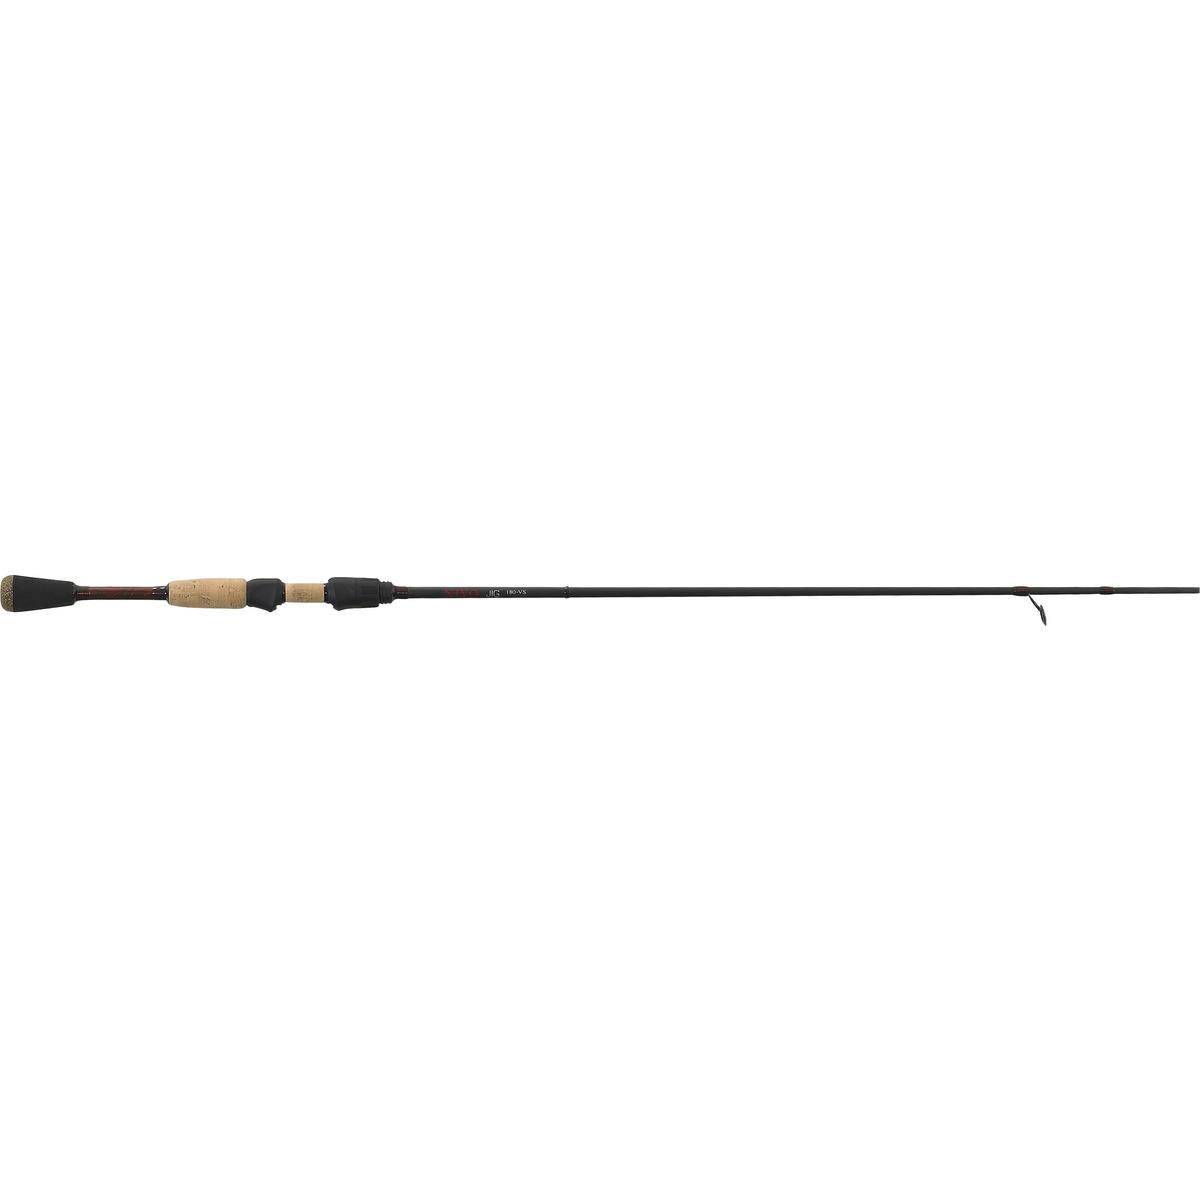 Iron Claw Niyo Jig - 188-VS 8-18 g